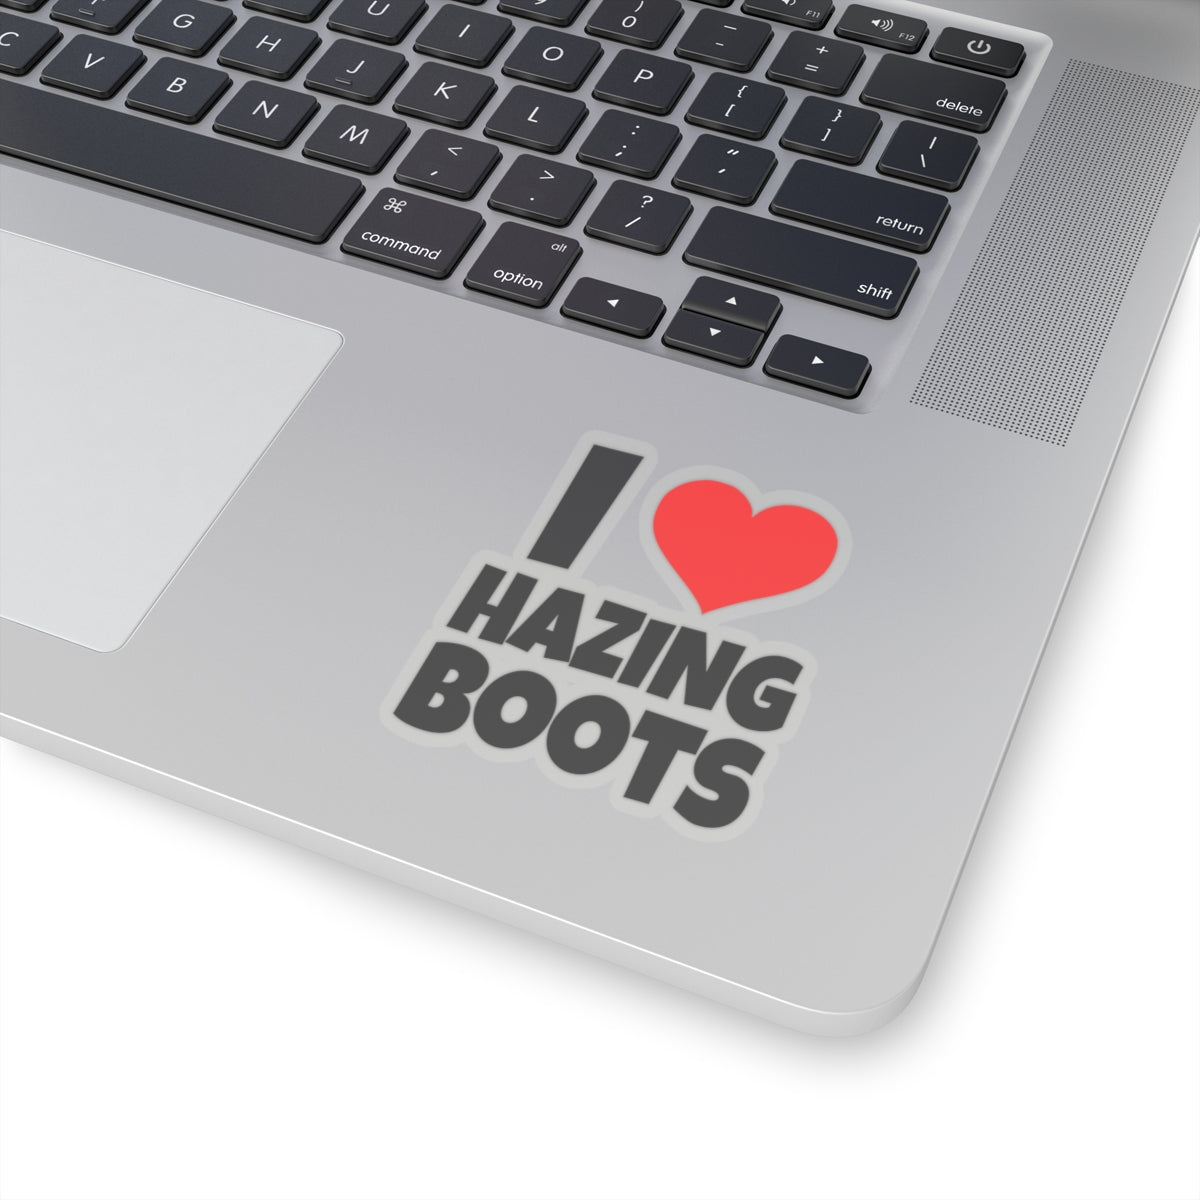 I Love Hazing Boots - Kiss-Cut Stickers